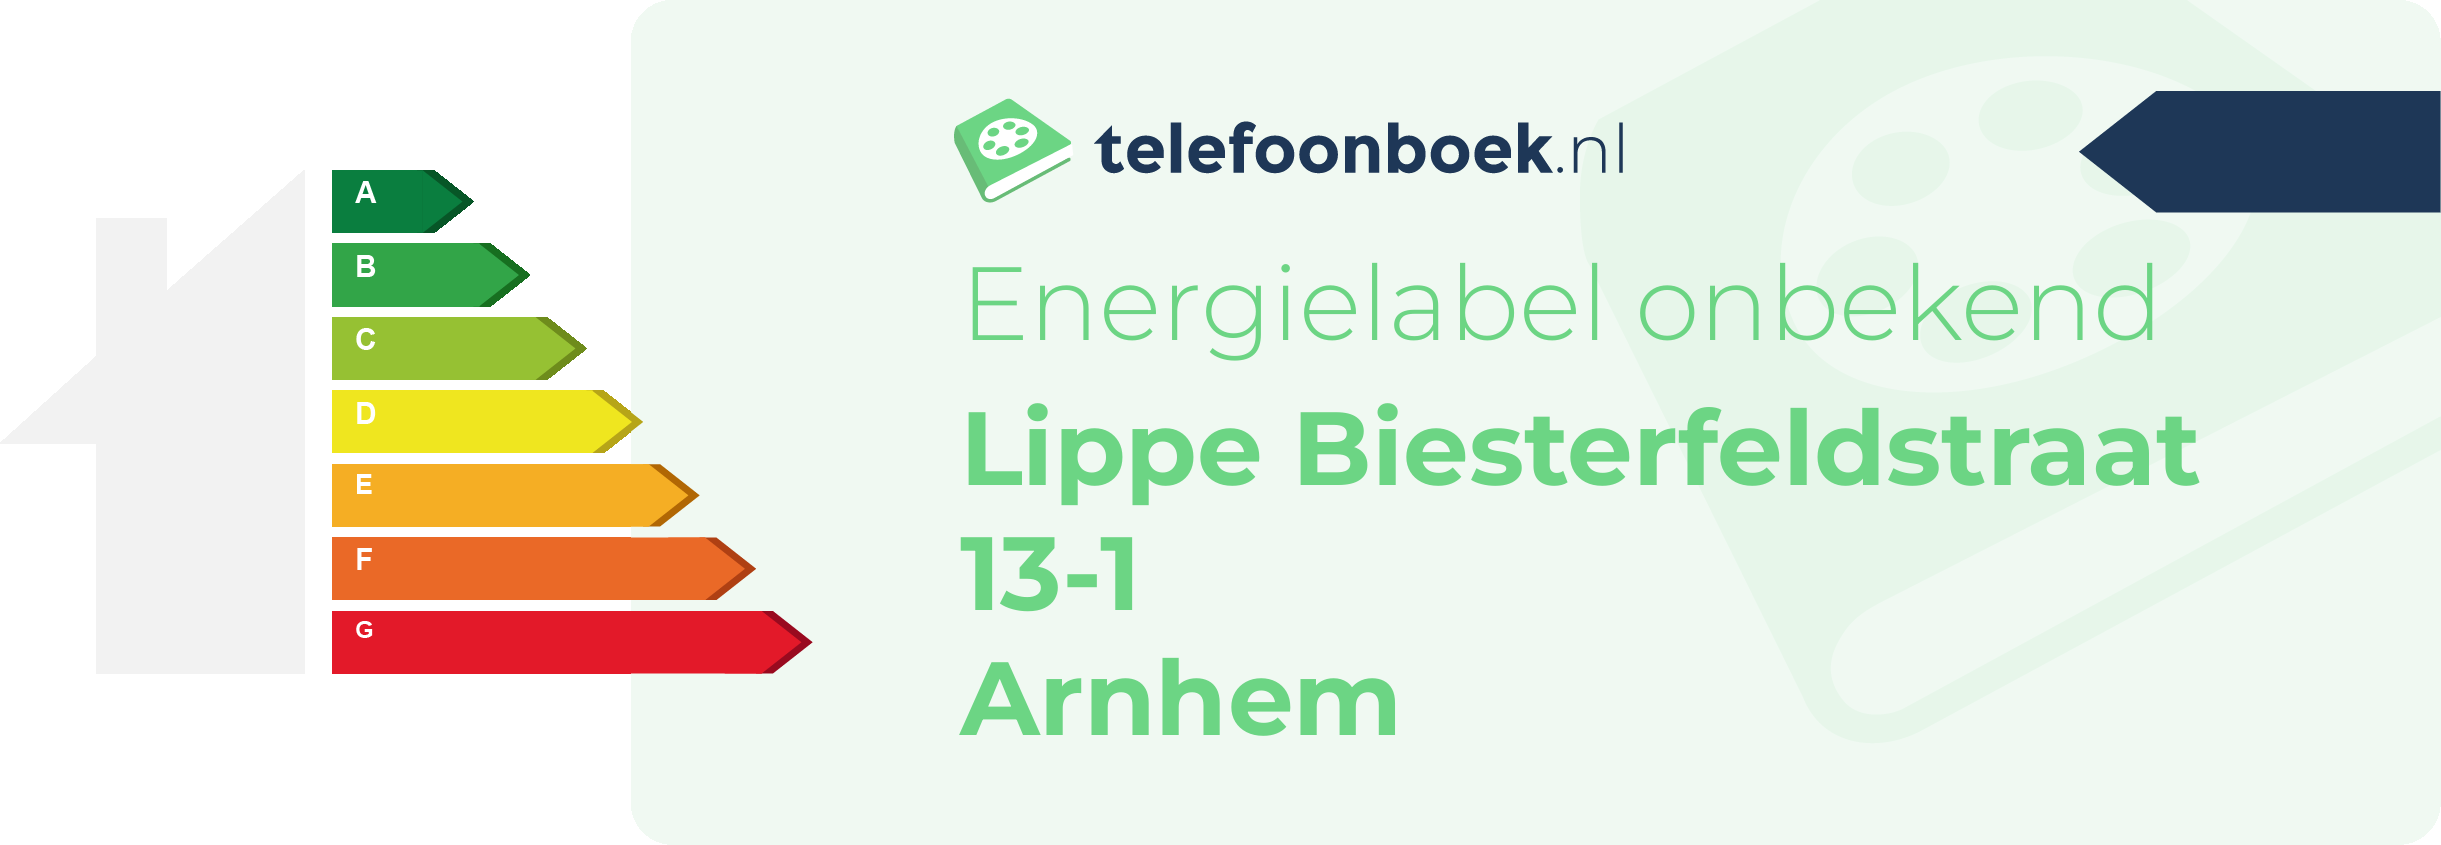 Energielabel Lippe Biesterfeldstraat 13-1 Arnhem